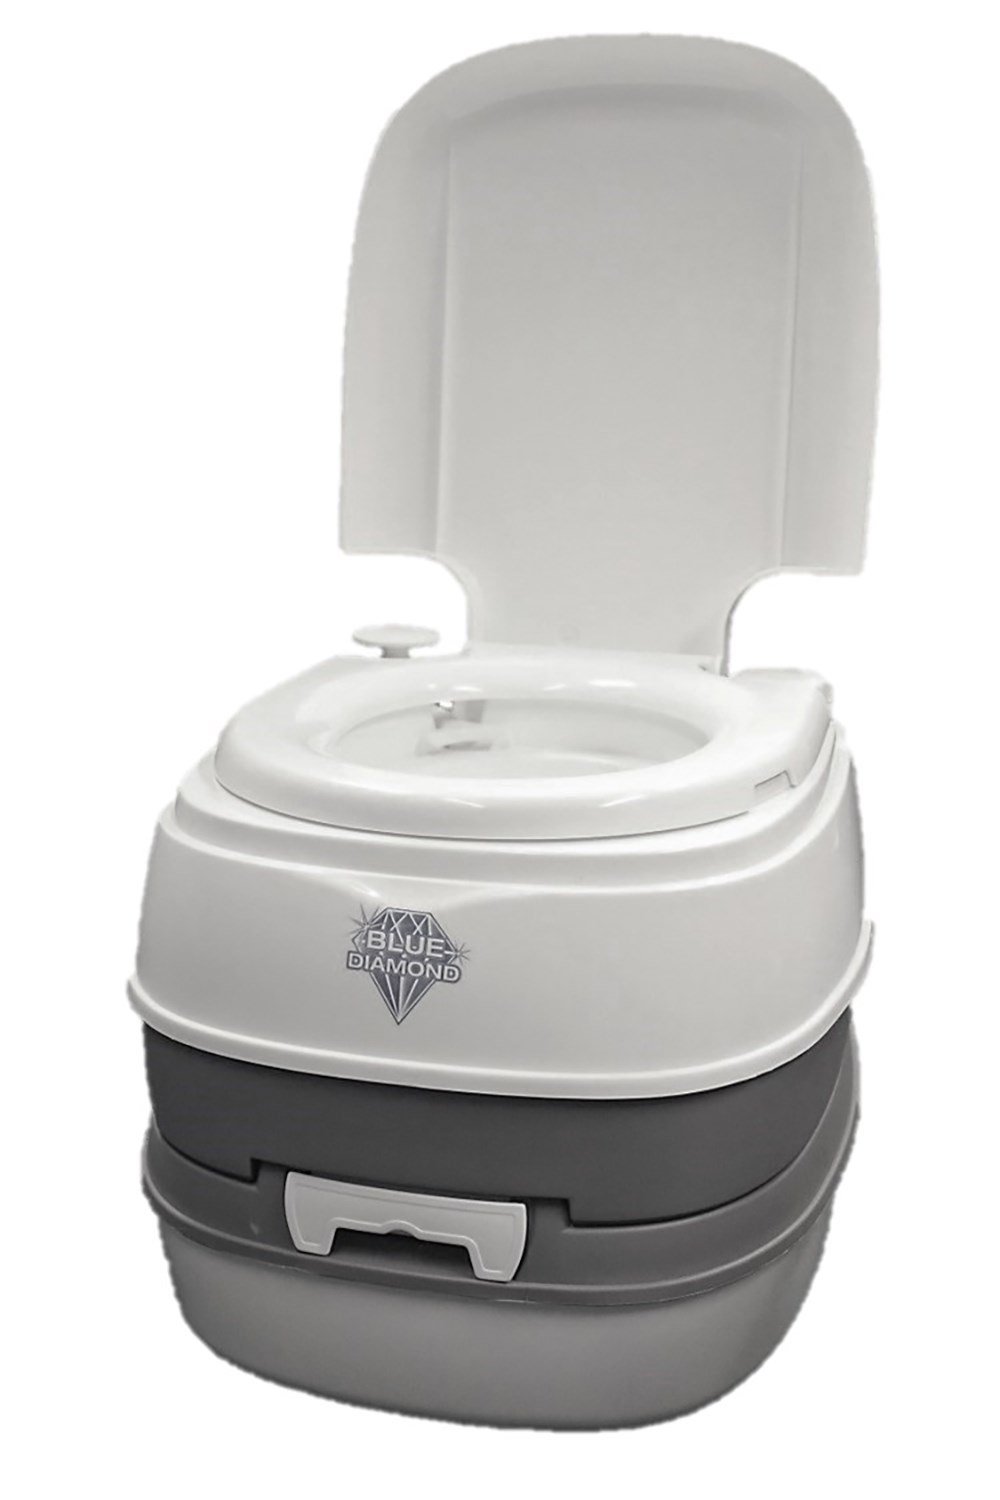 Nature Calls 16L Flushing Portable Toilet -